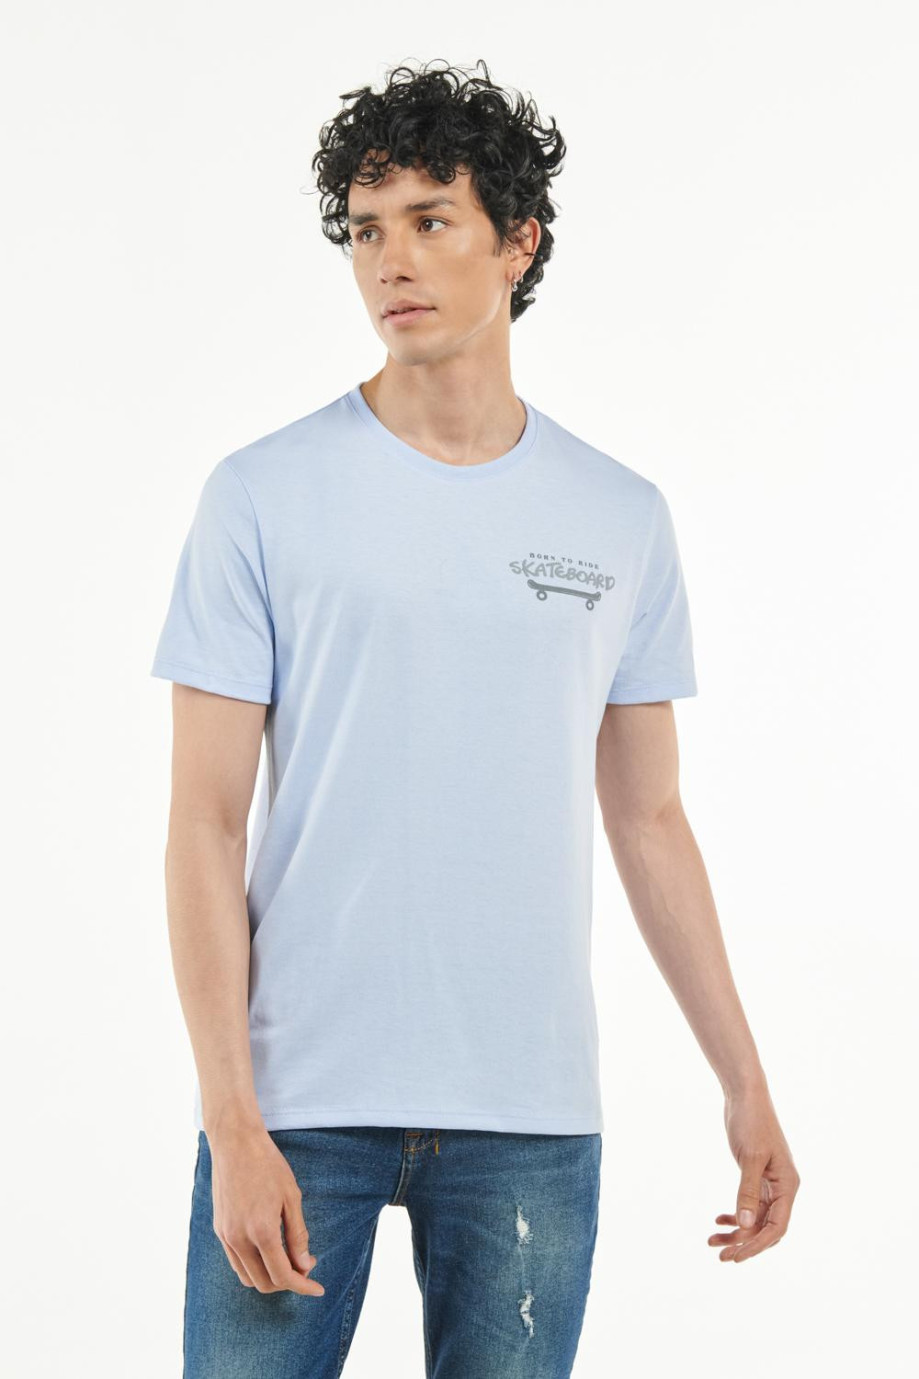 Camiseta manga corta azul clara con diseño de skateboard en frente